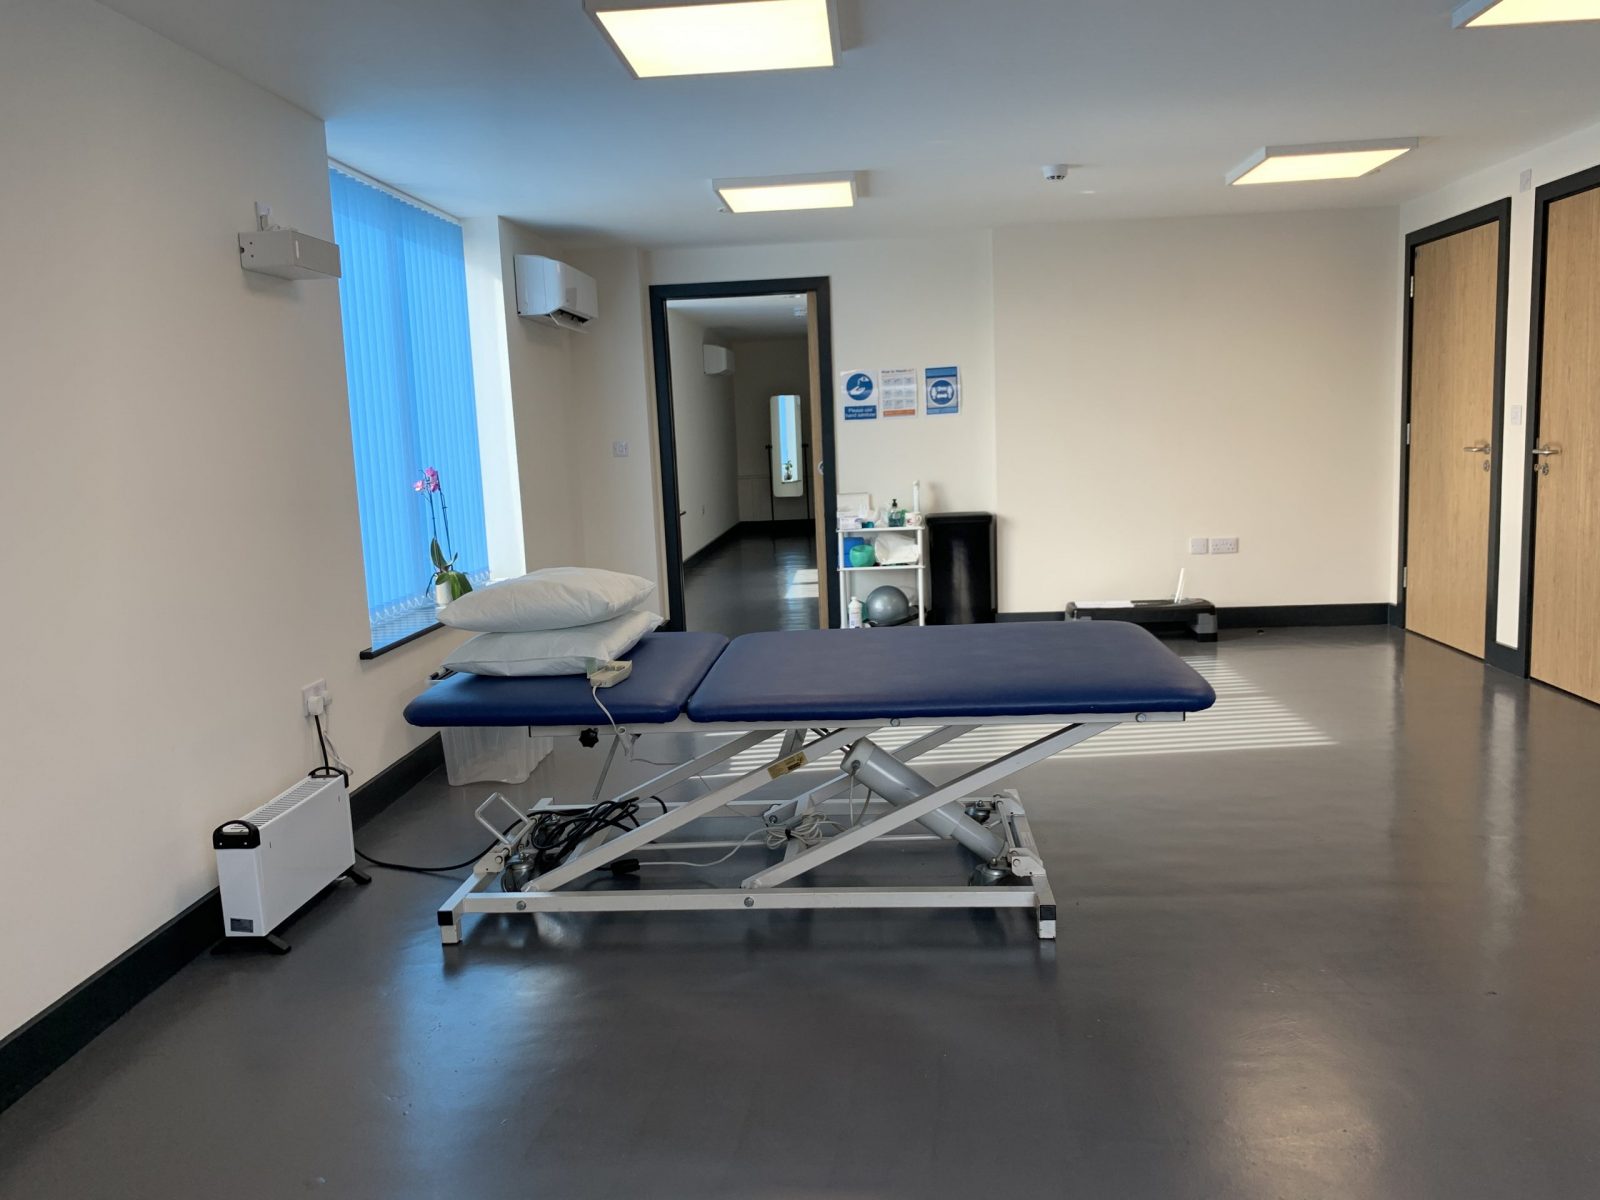 Treatment_room_at DNP_Euxton